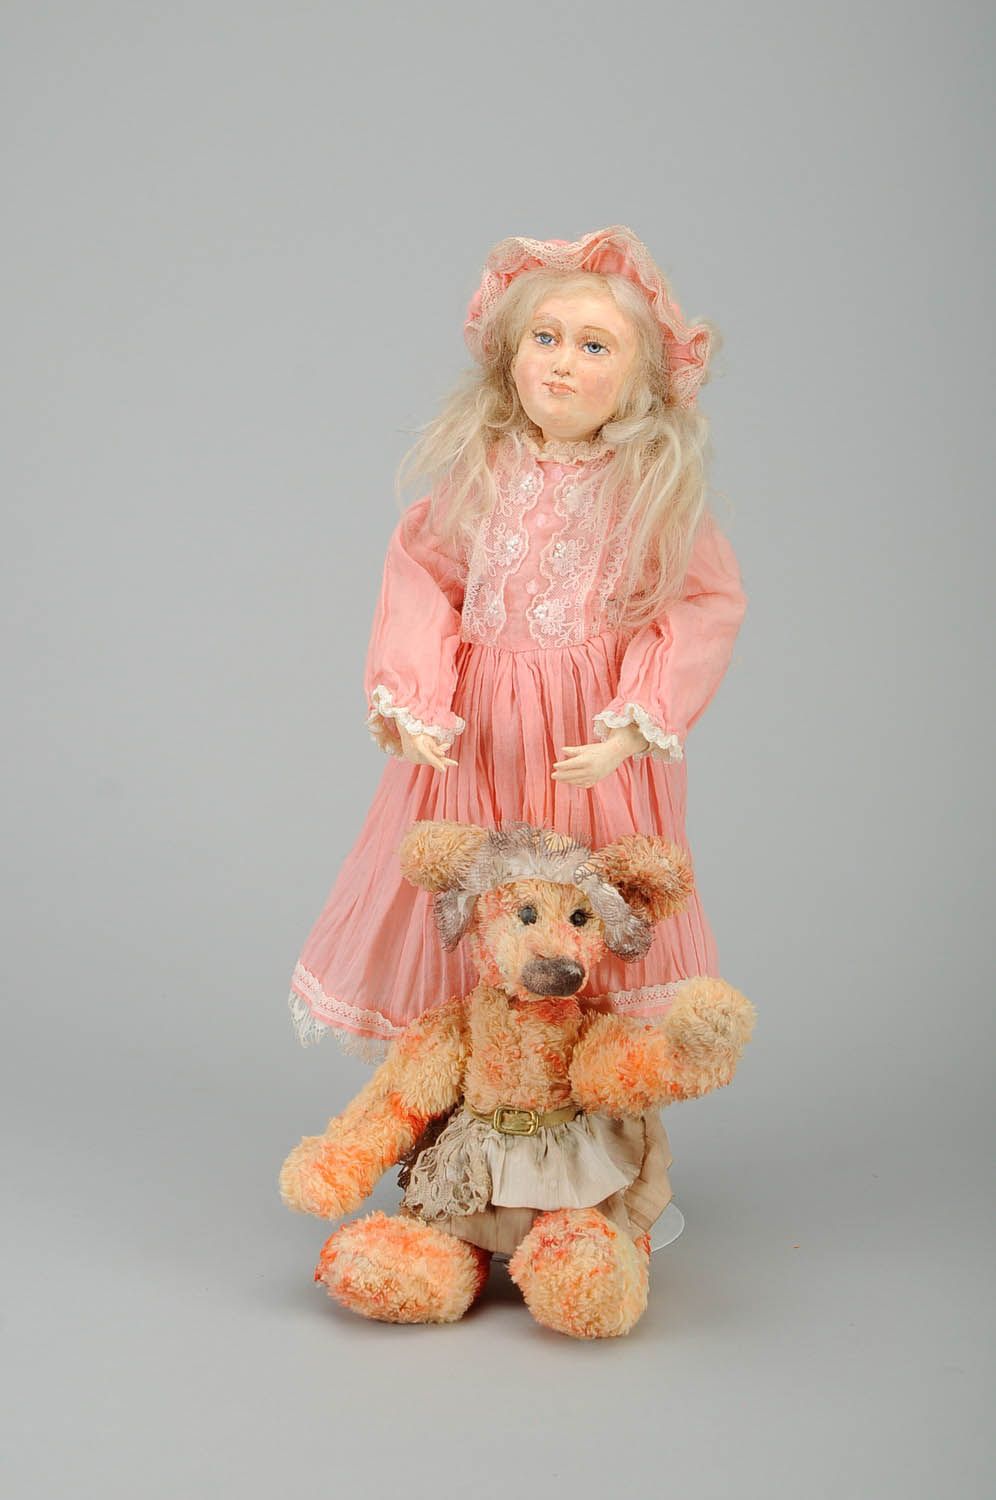 Boneca de brinquedo autoral Masha e o Urso foto 1